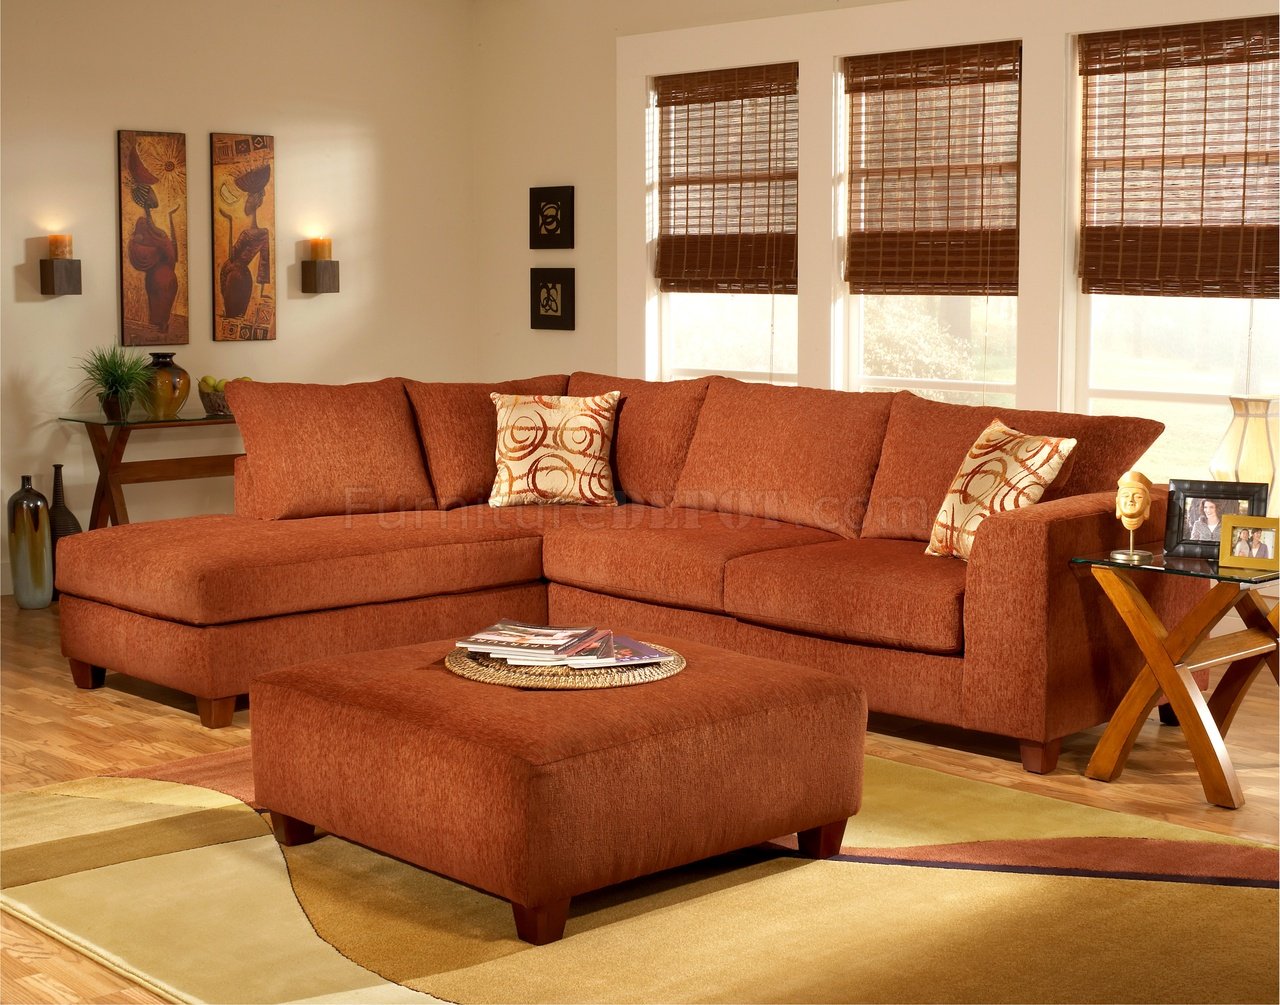 terracotta sofa living room